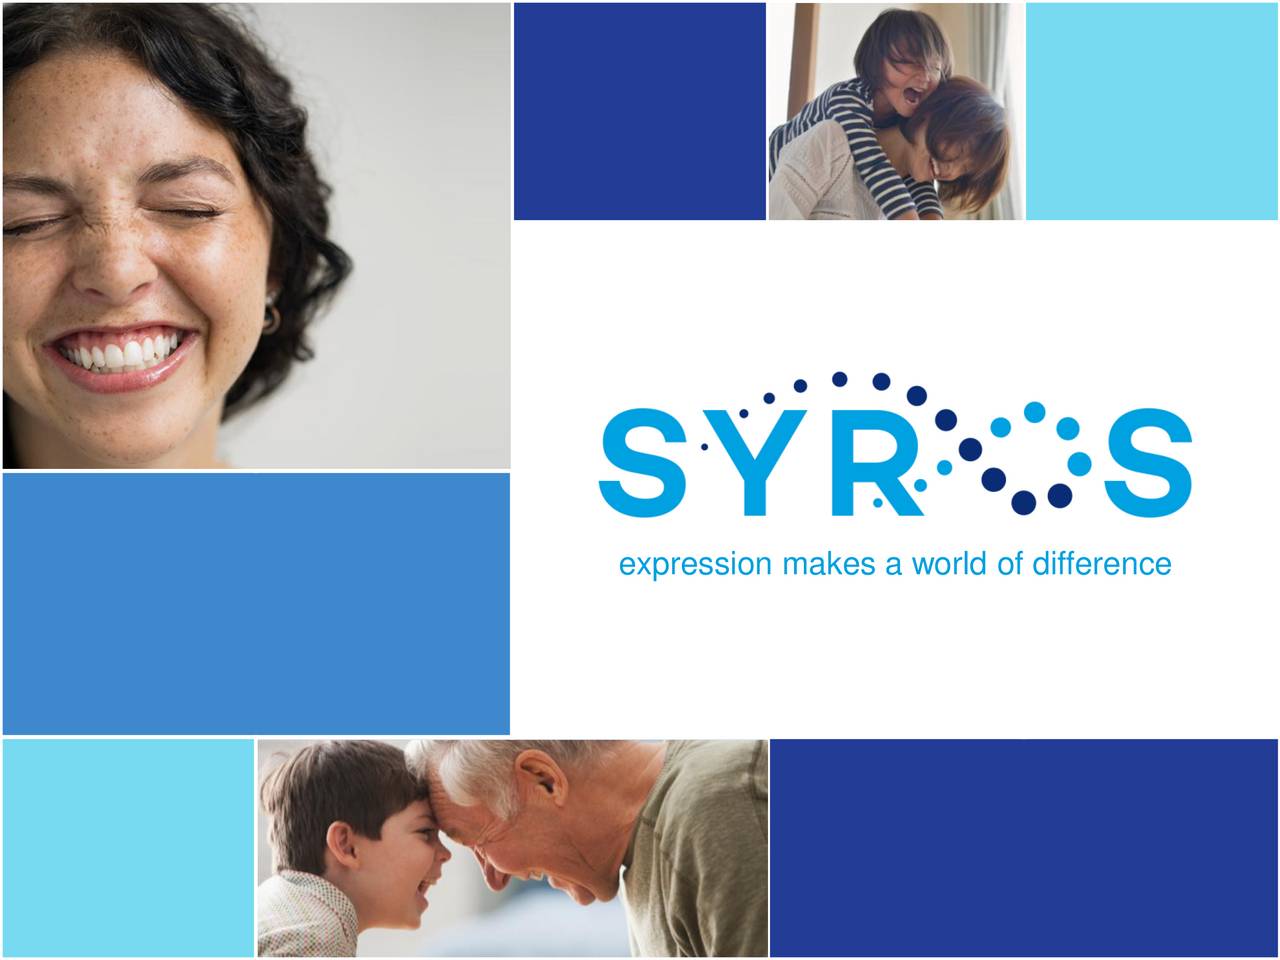 Syros全球首创白血病药SY-1425获孤儿药认定